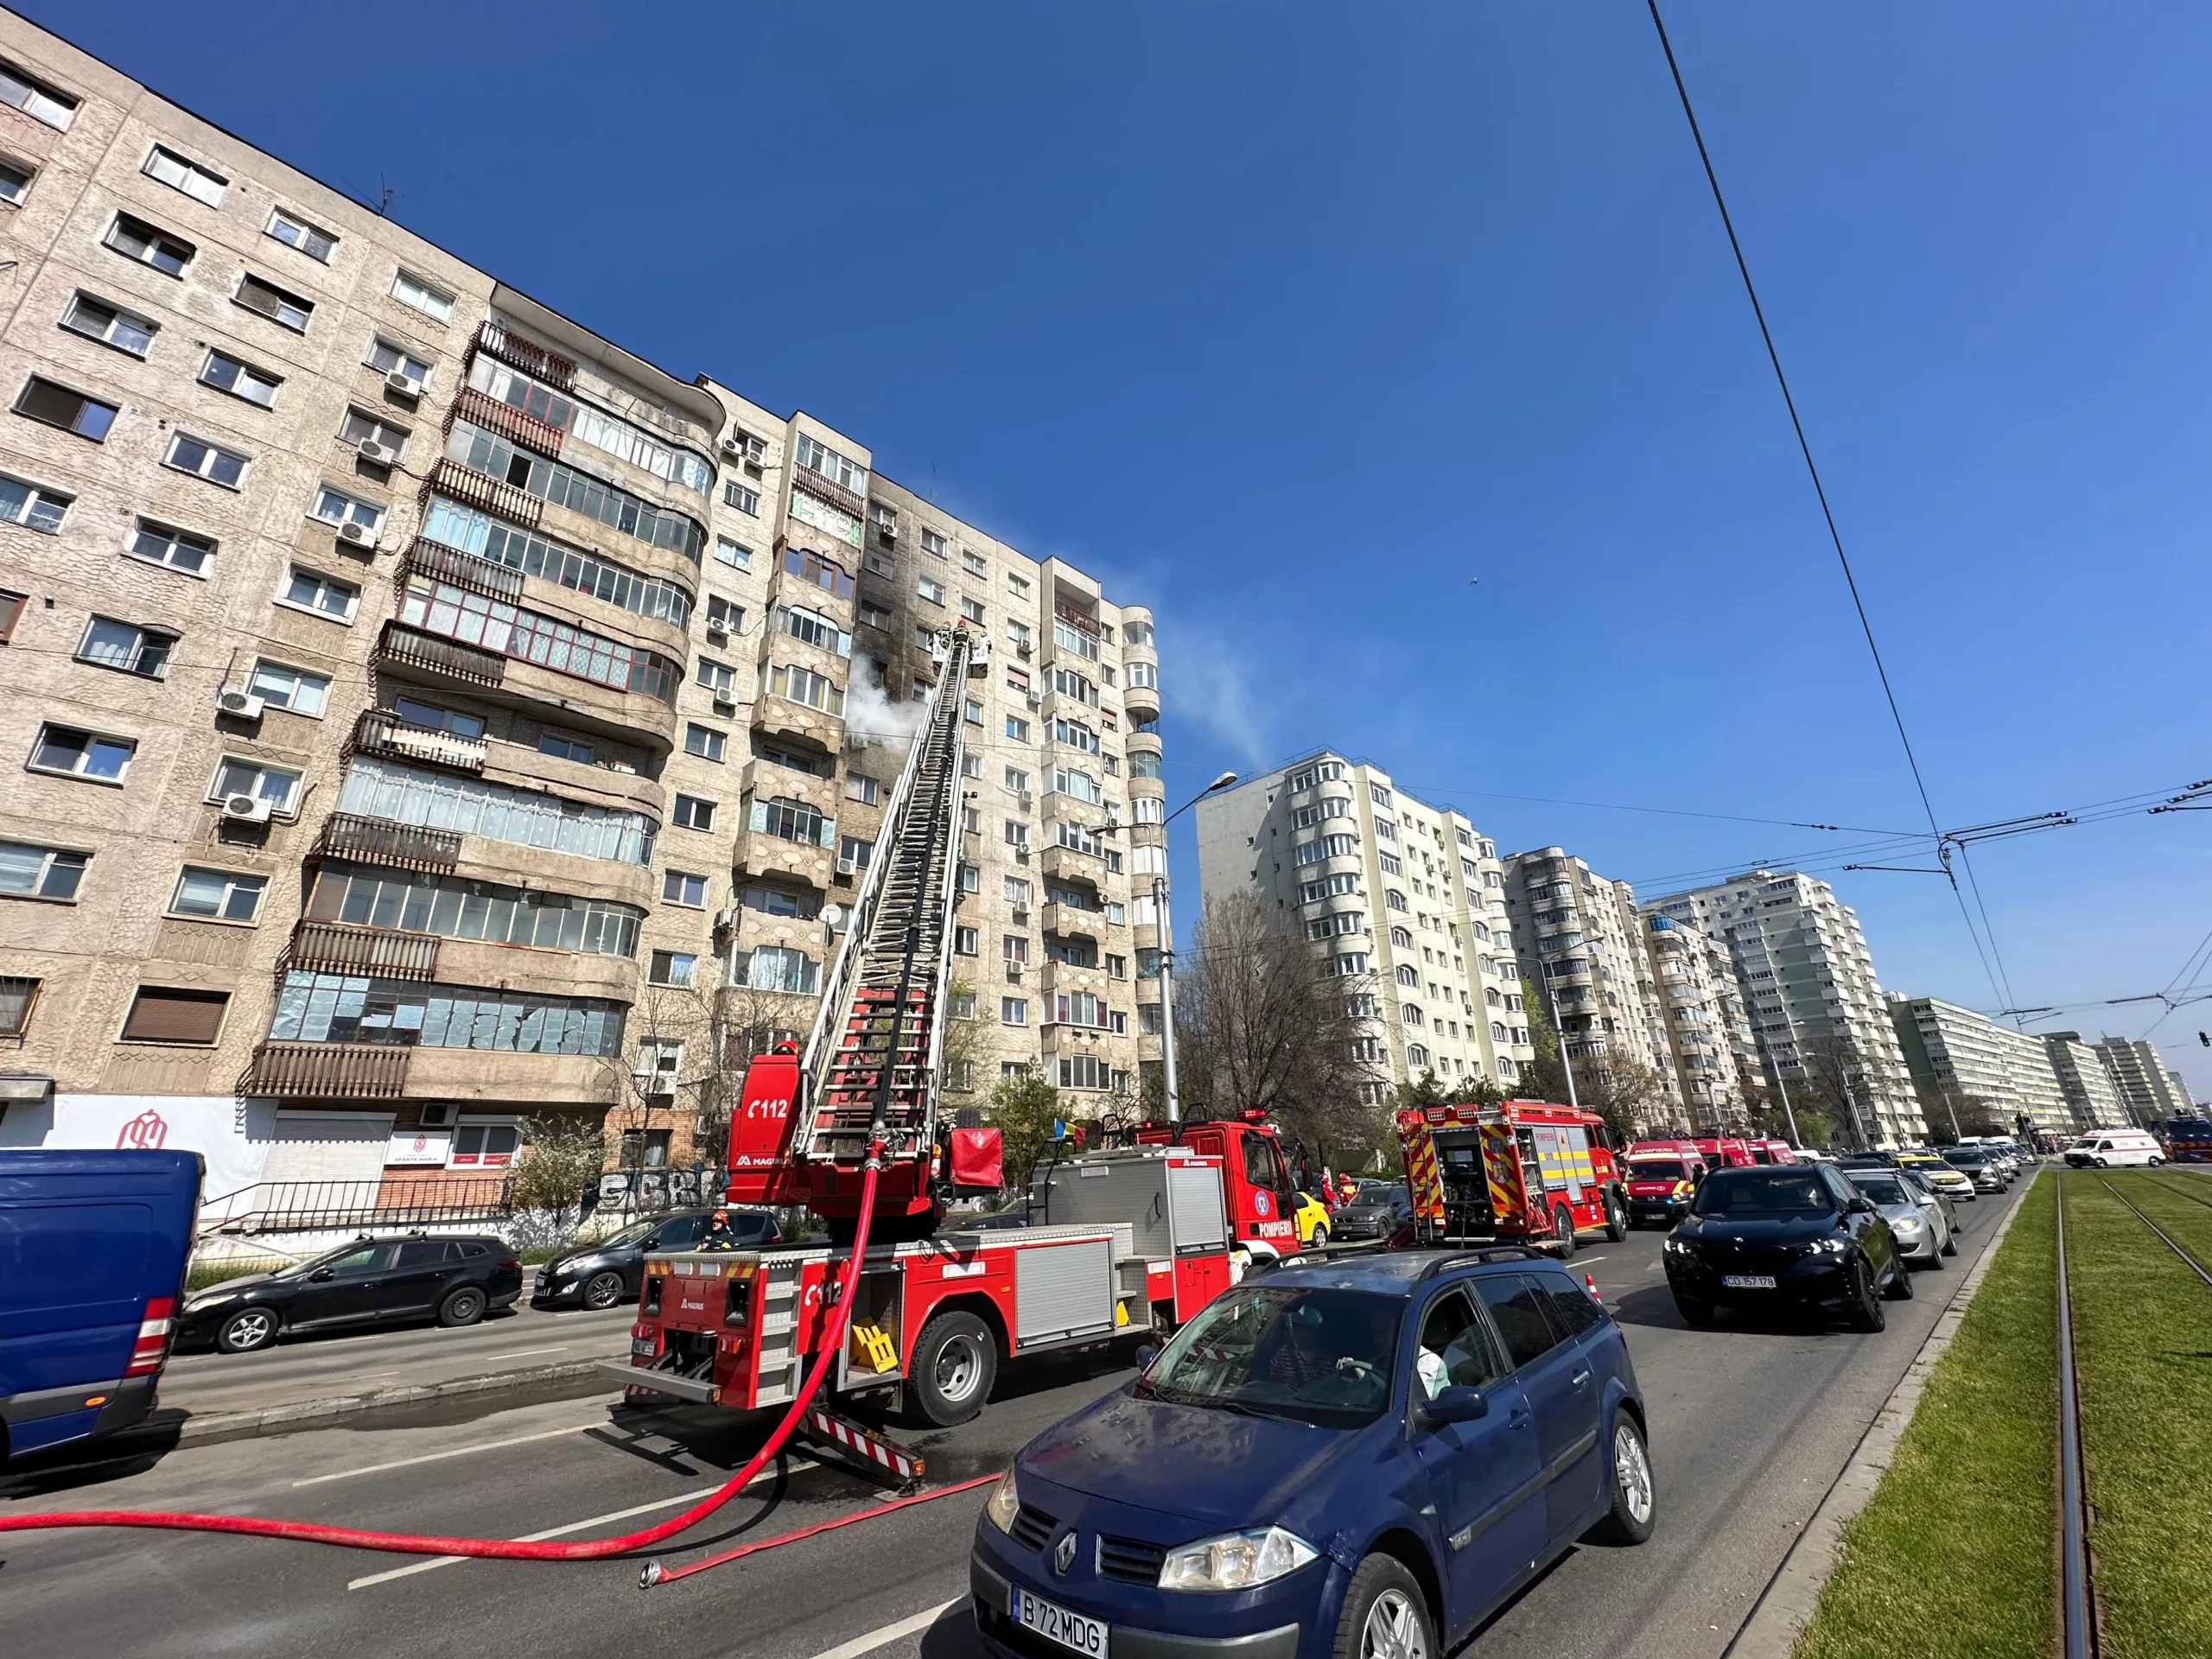 Zeci de locatari, evacuați de urgență din cauza unui incendiu dintr-un bloc din Pantelimon. Cinci persoane au ajuns la spital